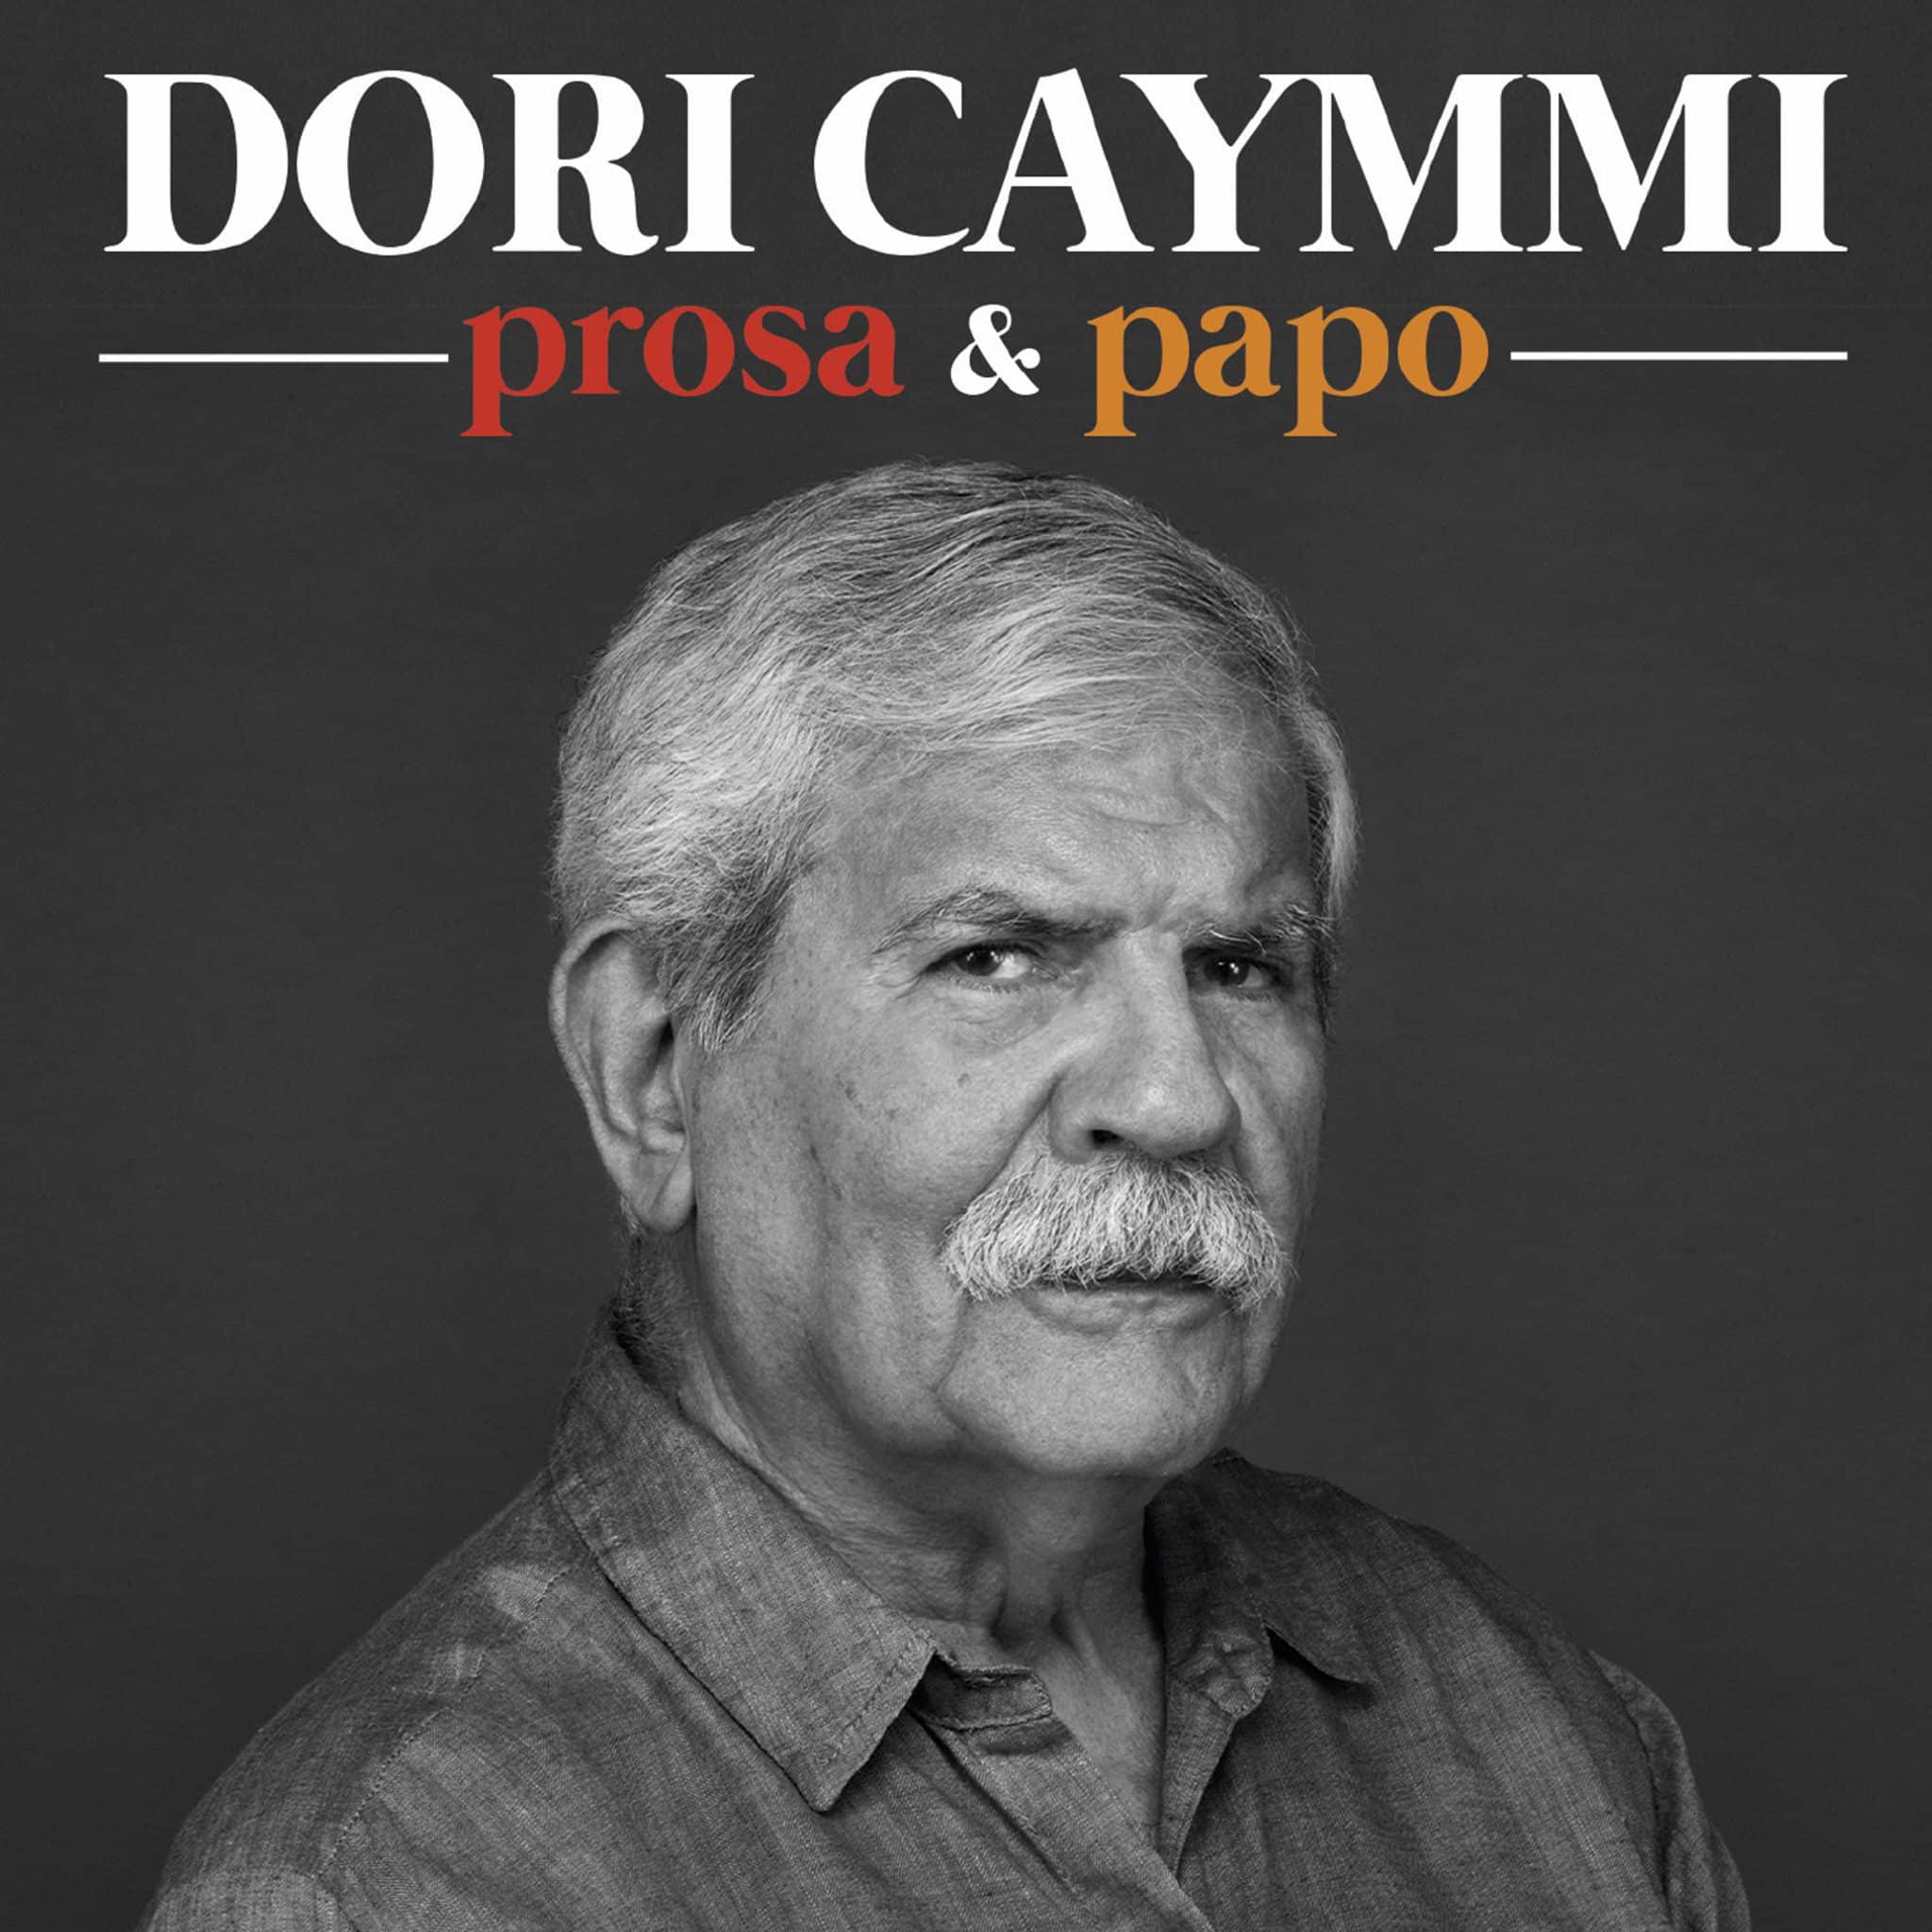 revistaprosaversoearte.com - Dori Caymmi lança álbum 'Prosa e Papo', com inéditas e participações especiais